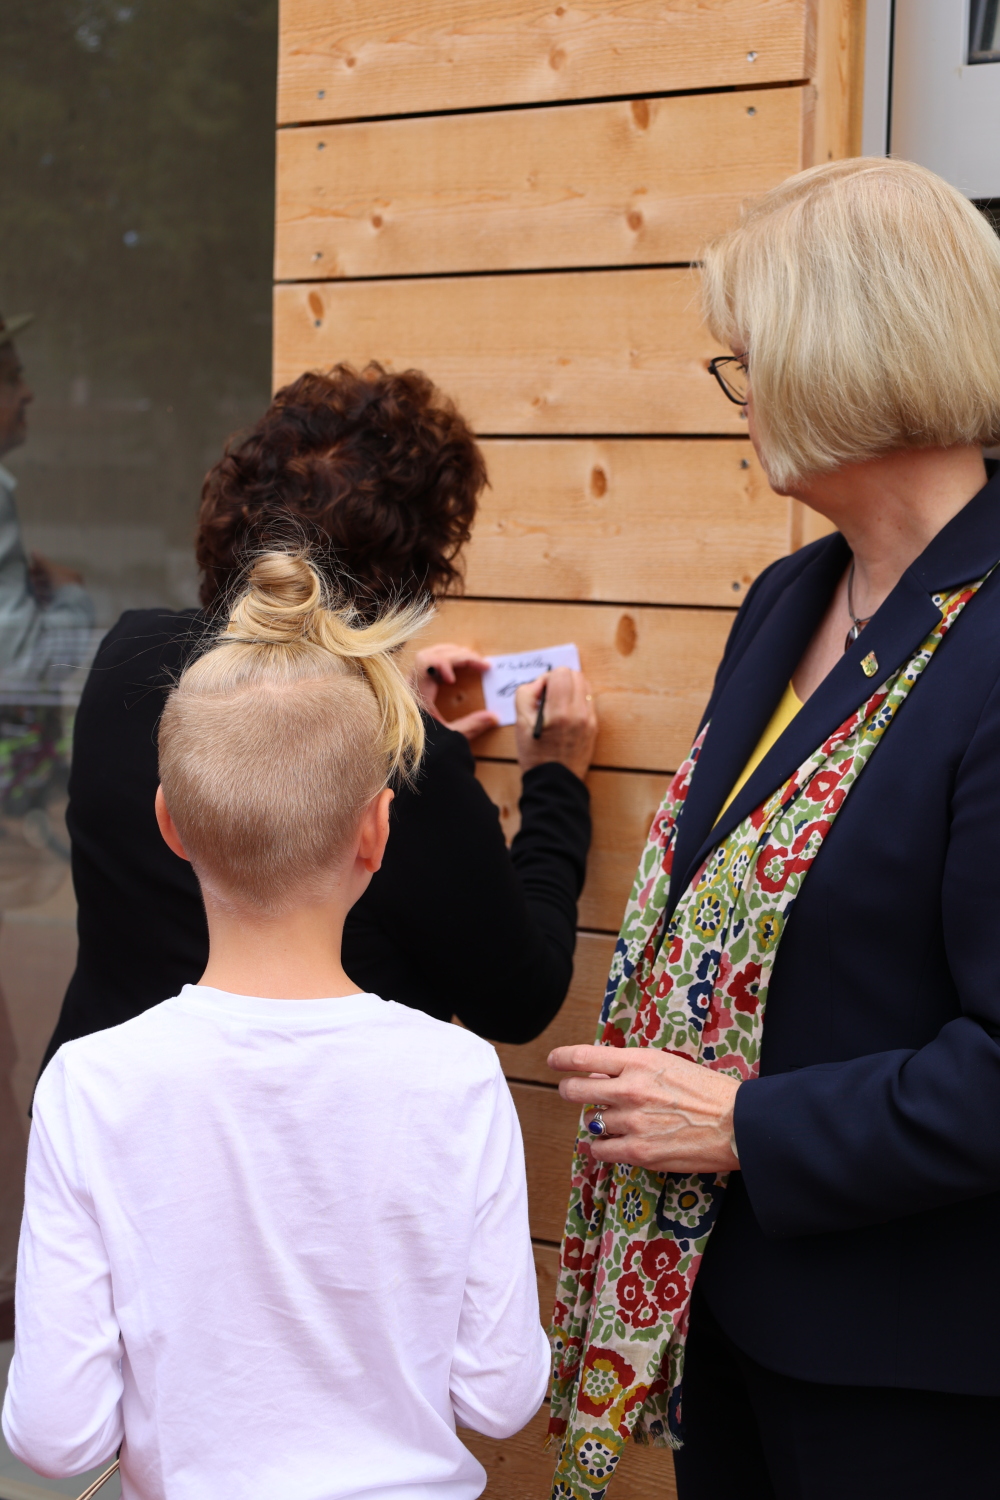 Bezirksbürgermeisterin Schellenberg und Bezirksstadträtin Richter-Kotowski erfüllen Autogrammwünsche der Kinder